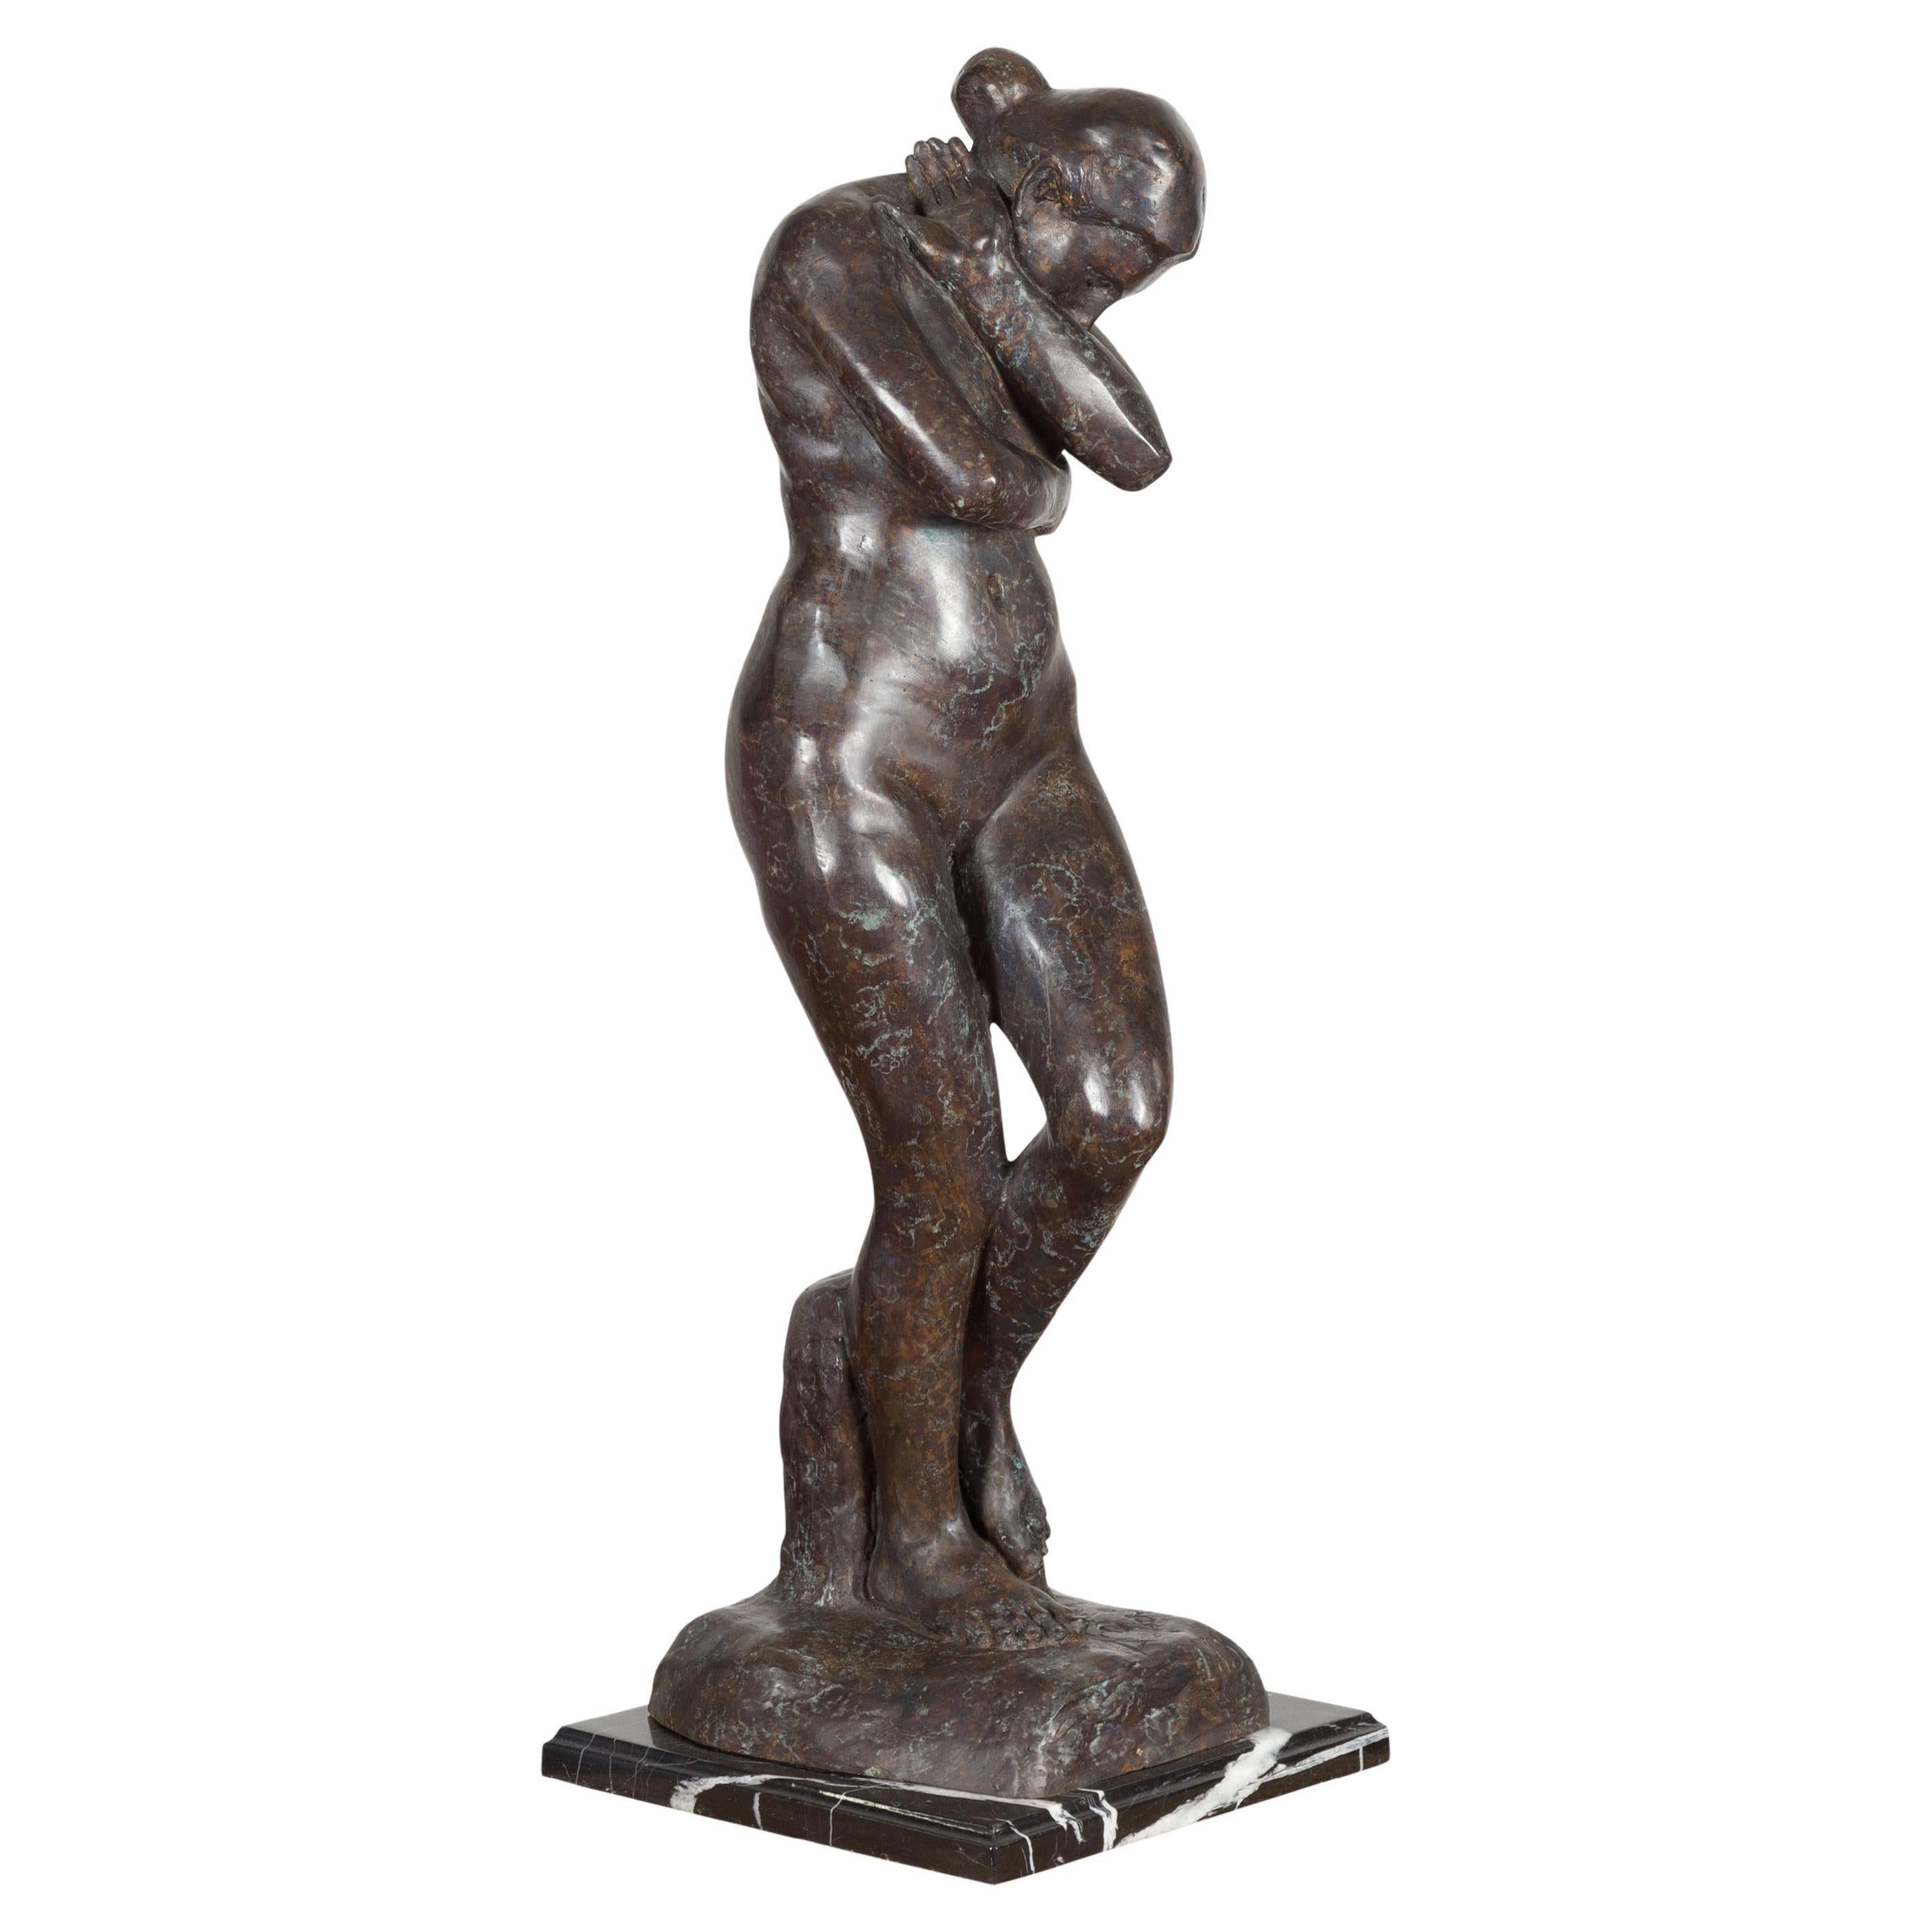 Sculpture en bronze moulé à la cire perdue inspirée de l'Époque d'Auguste Rodin sur socle en marbre